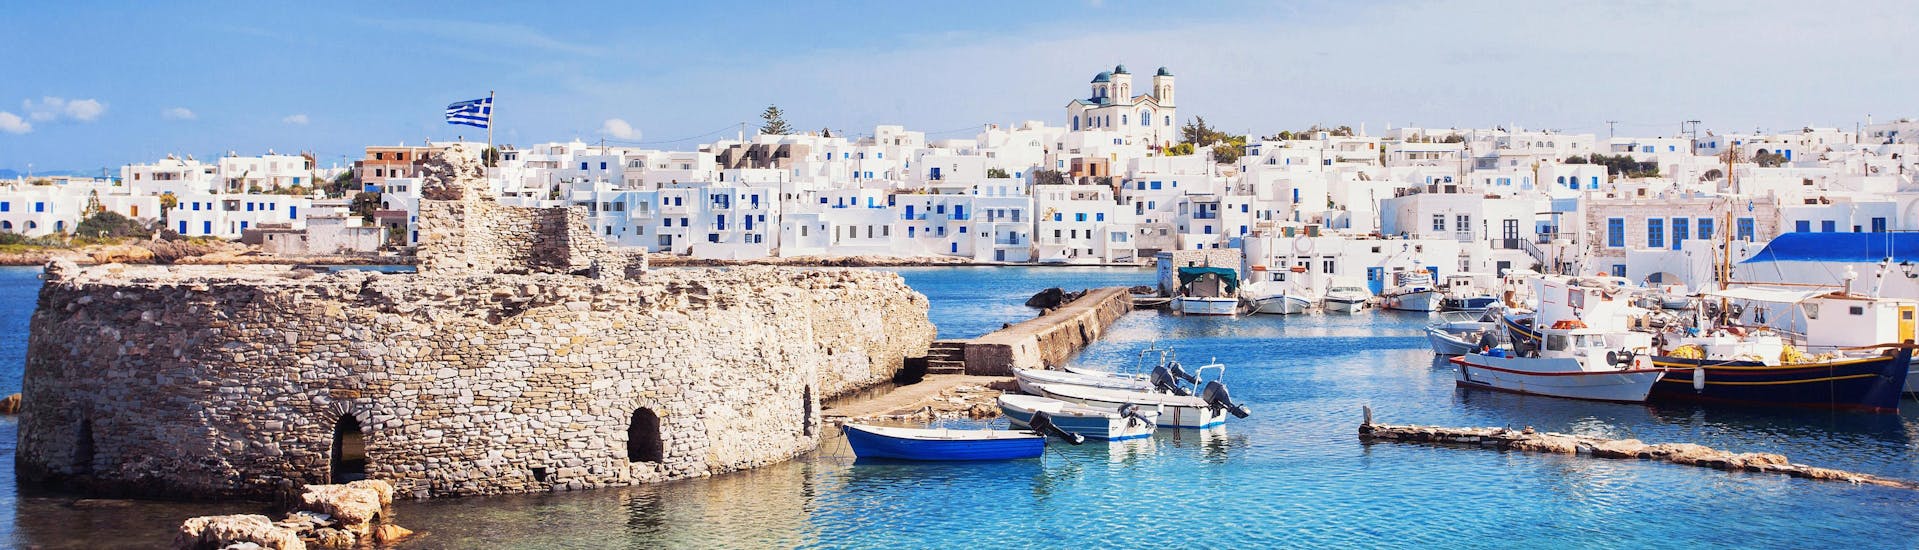 Un’immagine del porto di Naxos, una destinazione popolare per le persone che vogliono fare sport acquatici in Grecia.